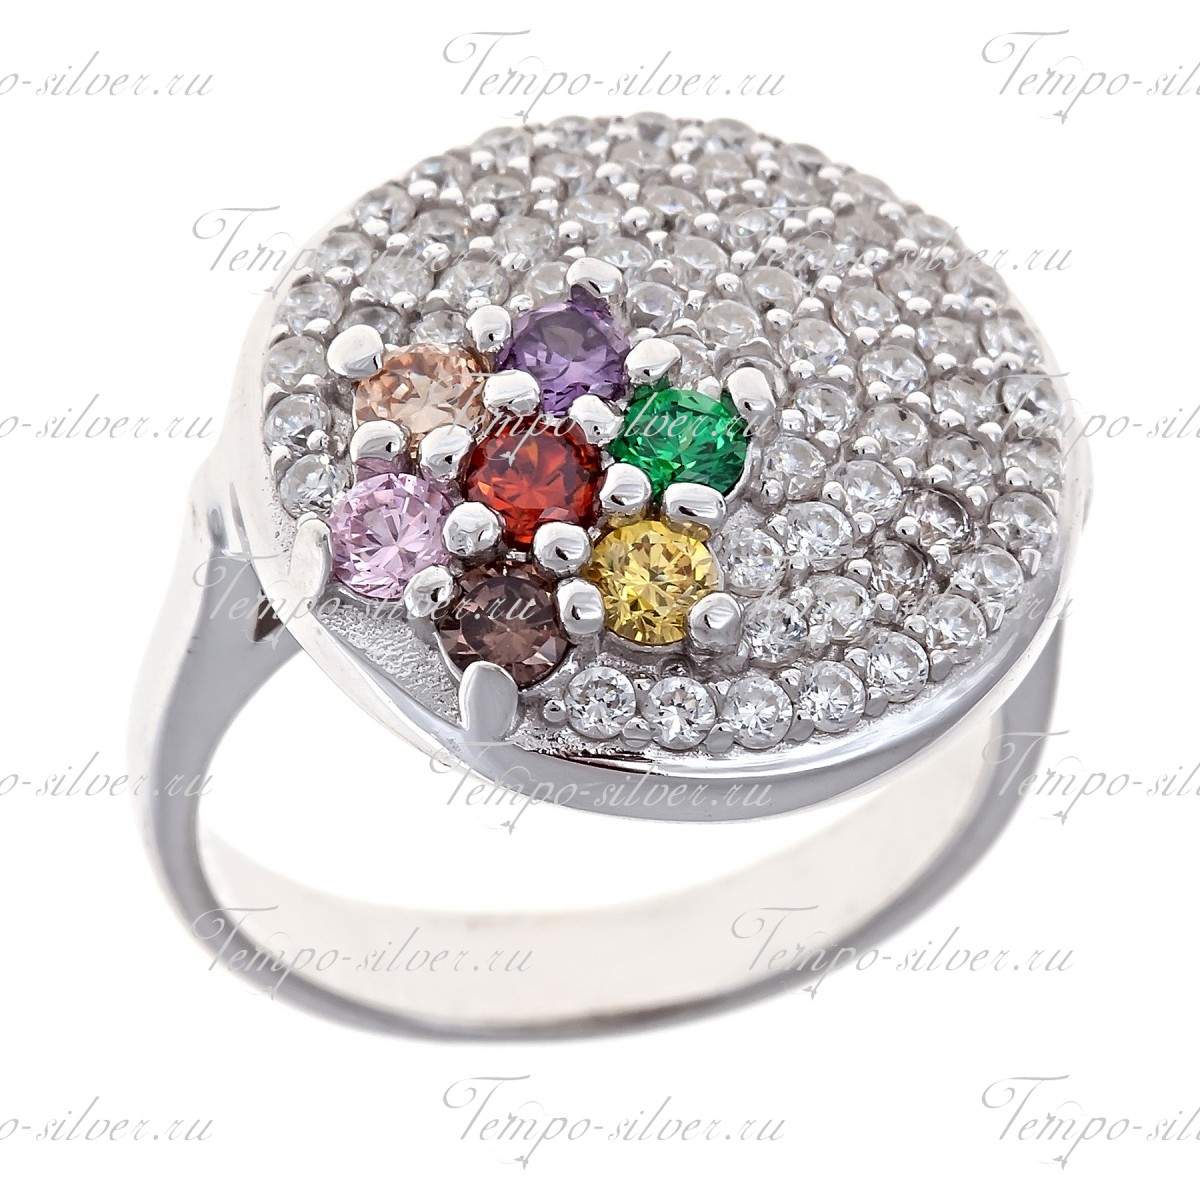 Кольцо из серебра круглой формы с цветком из цветных камней на белом фоне